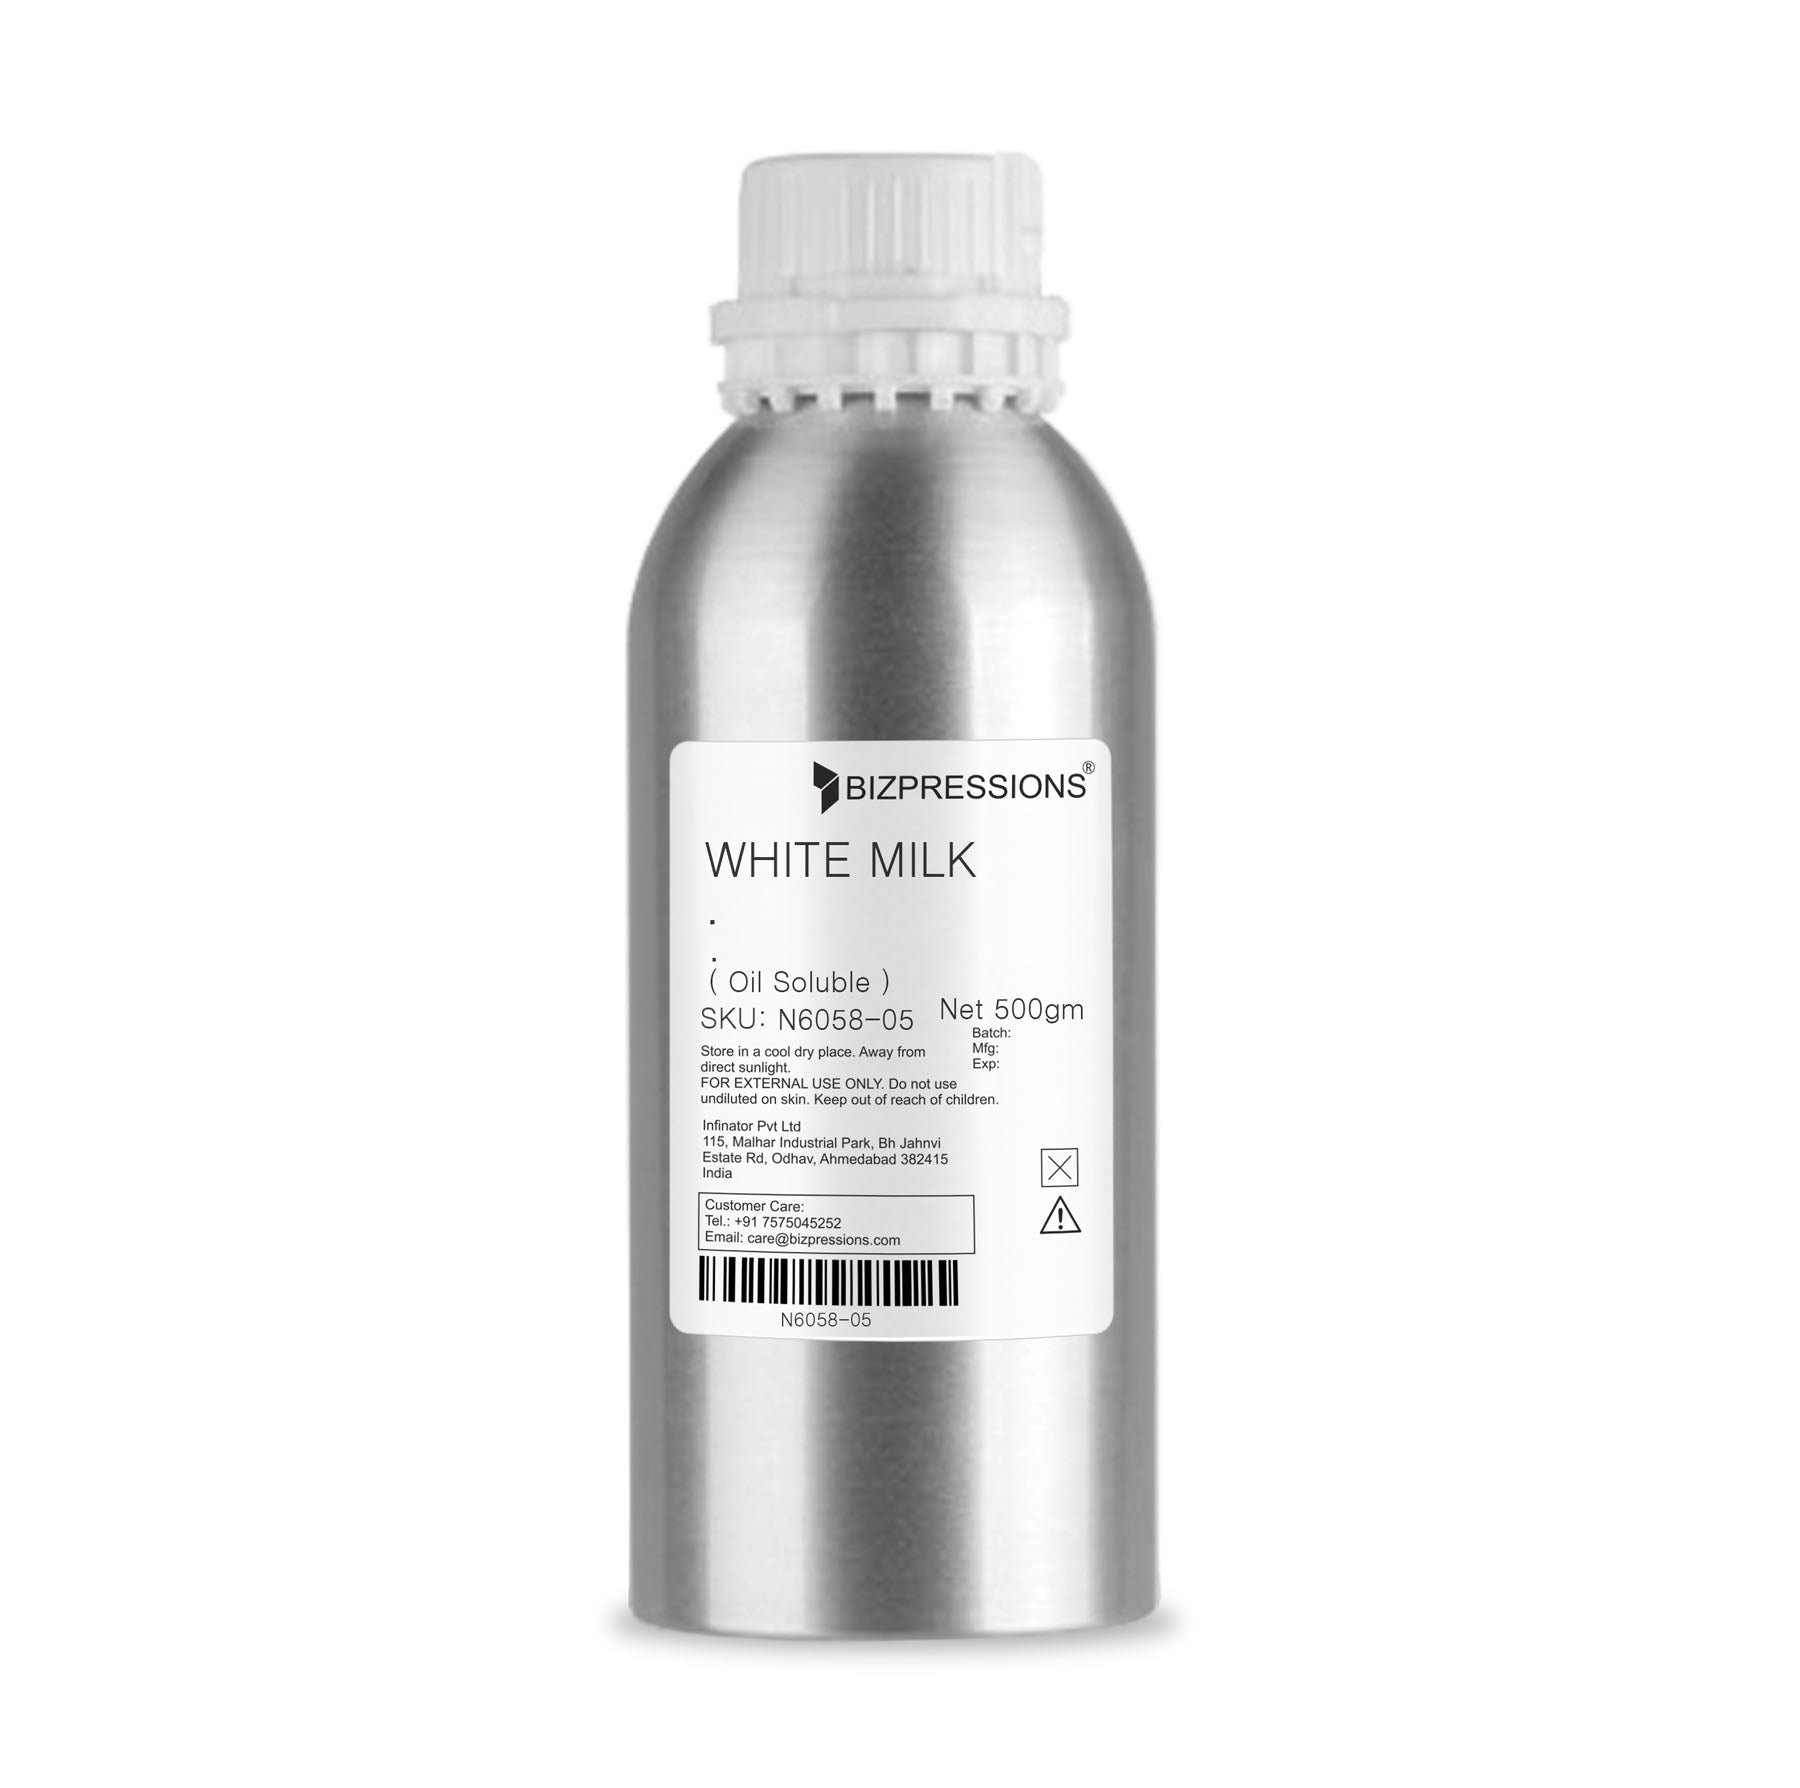 WHITE MILK - Fragrance ( Oil Soluble ) - 500 gm